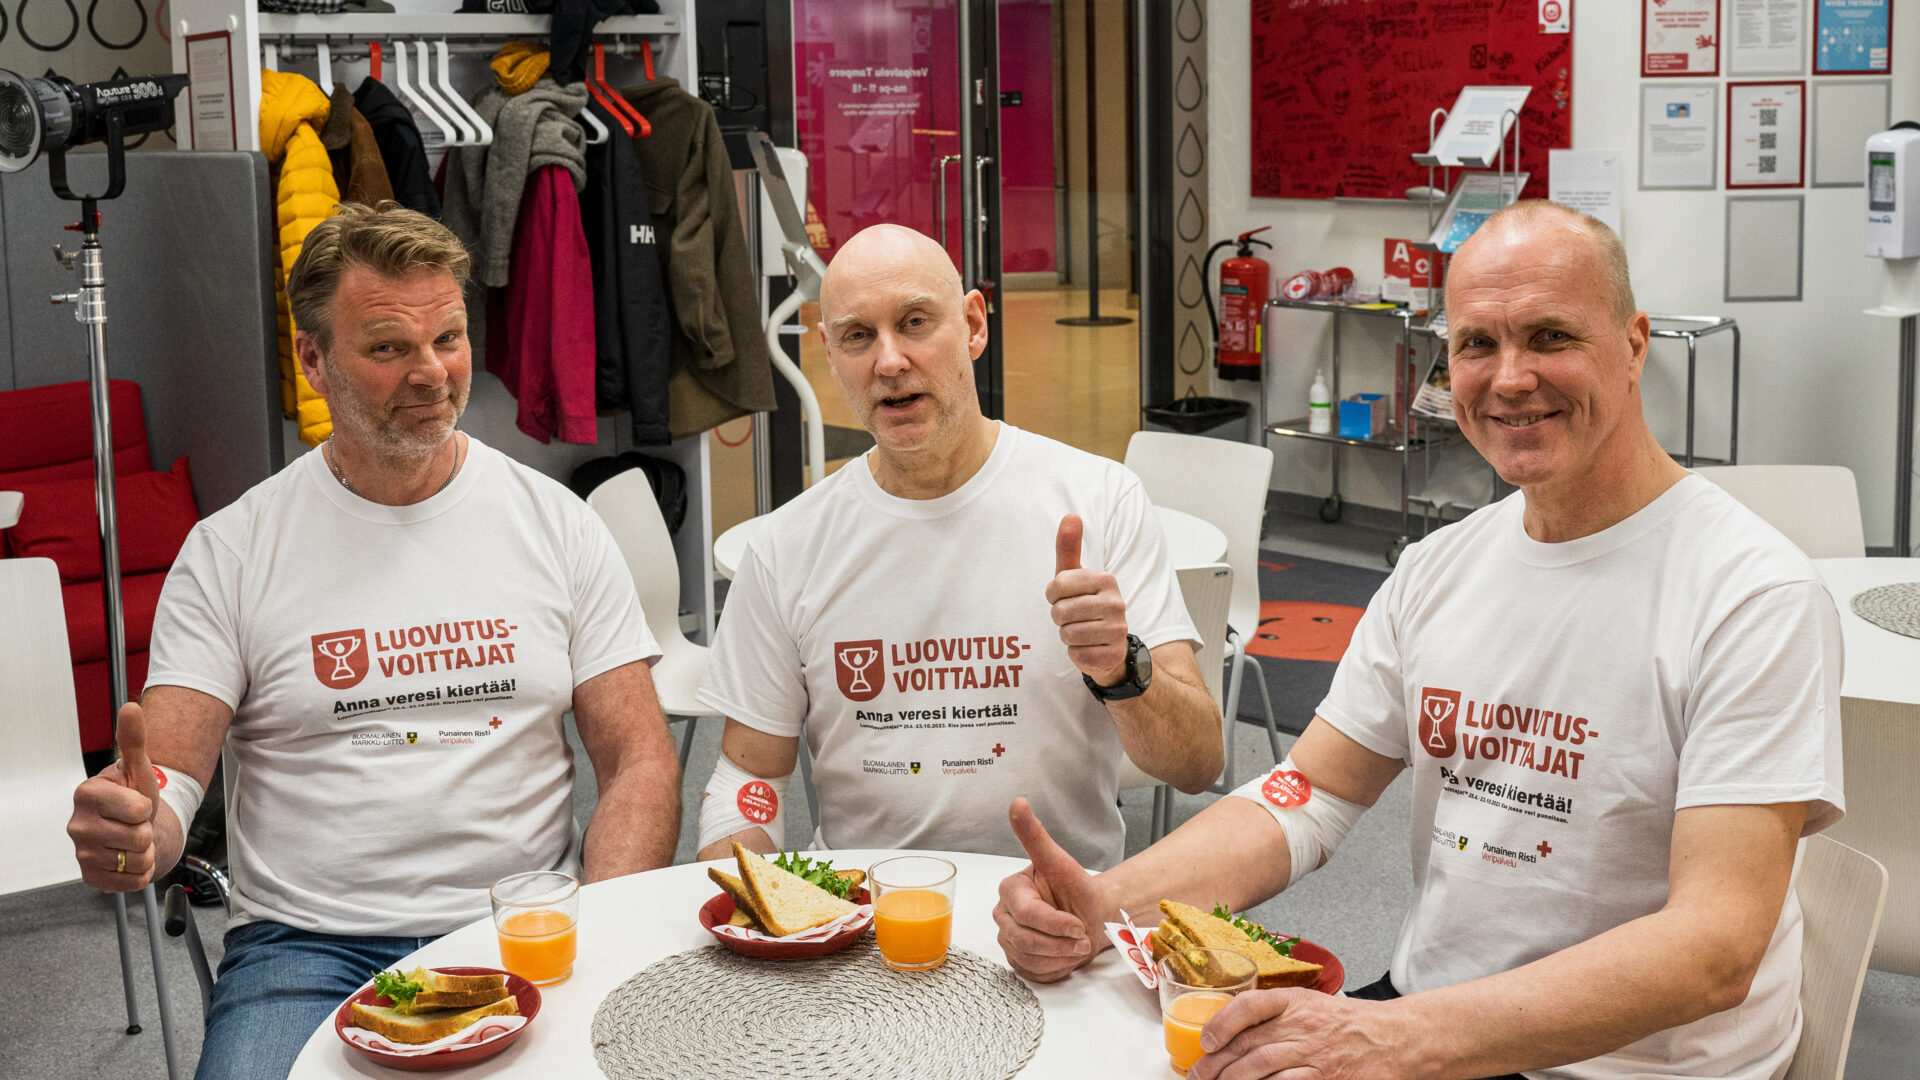 Kolme Markkua kahvittelemassa verenluovutuksen jälkeen. Kaikilla valkoiset t-paidat, joissa Luovutusvoittajat-logo.